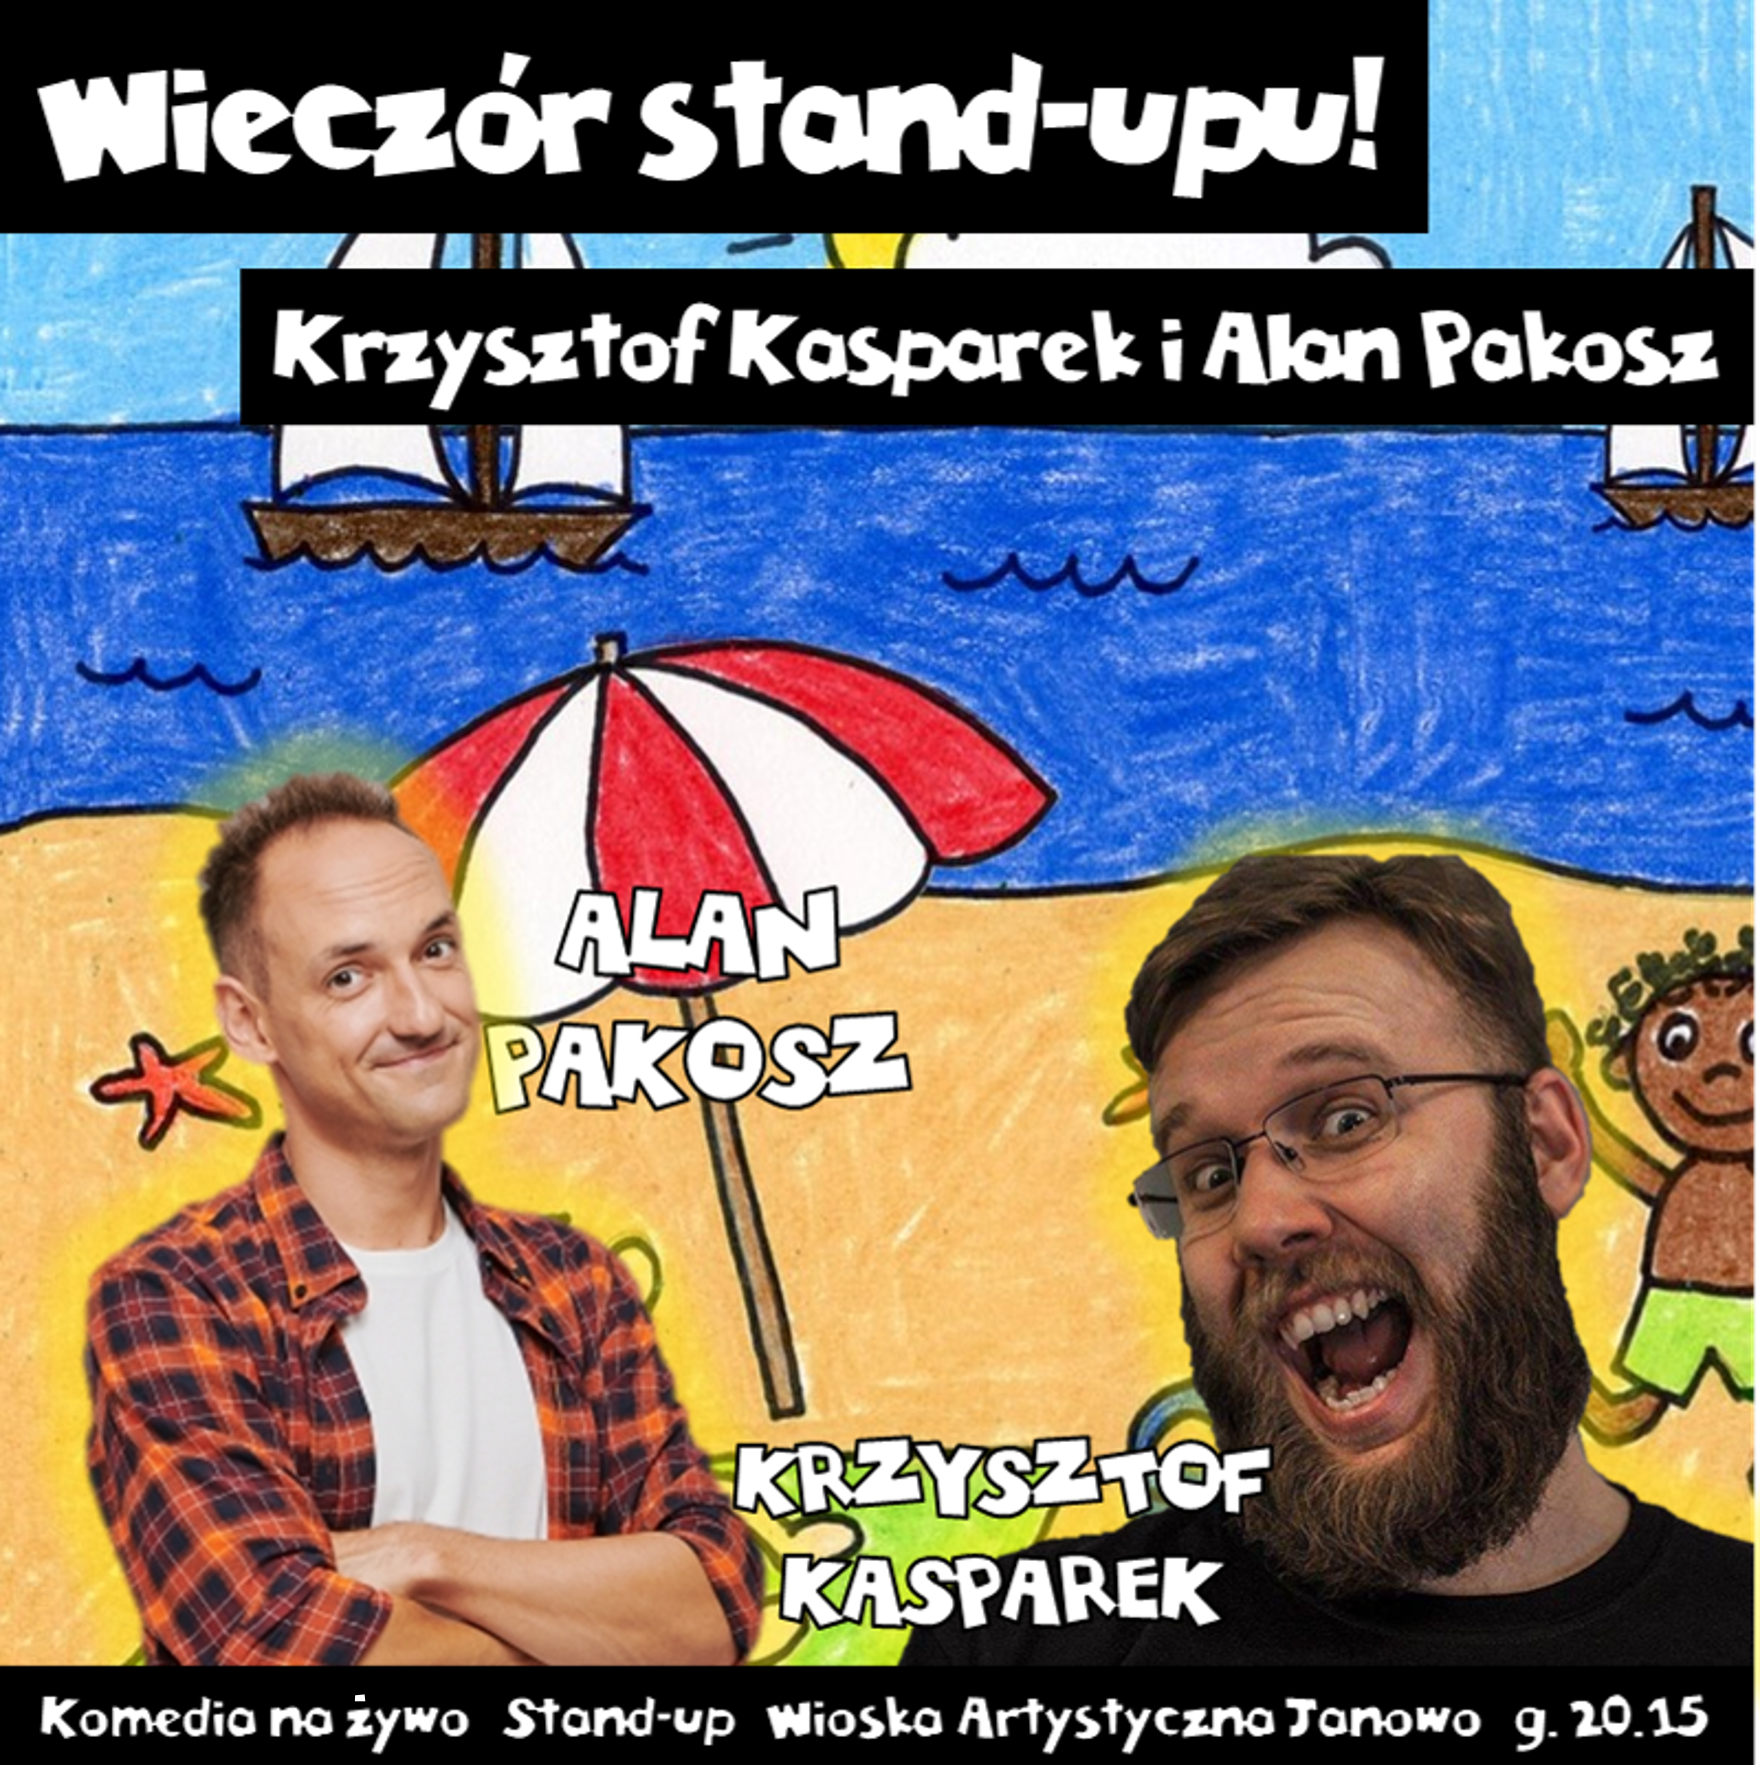 Wieczór stand-upu: Krzysztof Kasparek i Alan Pakosz